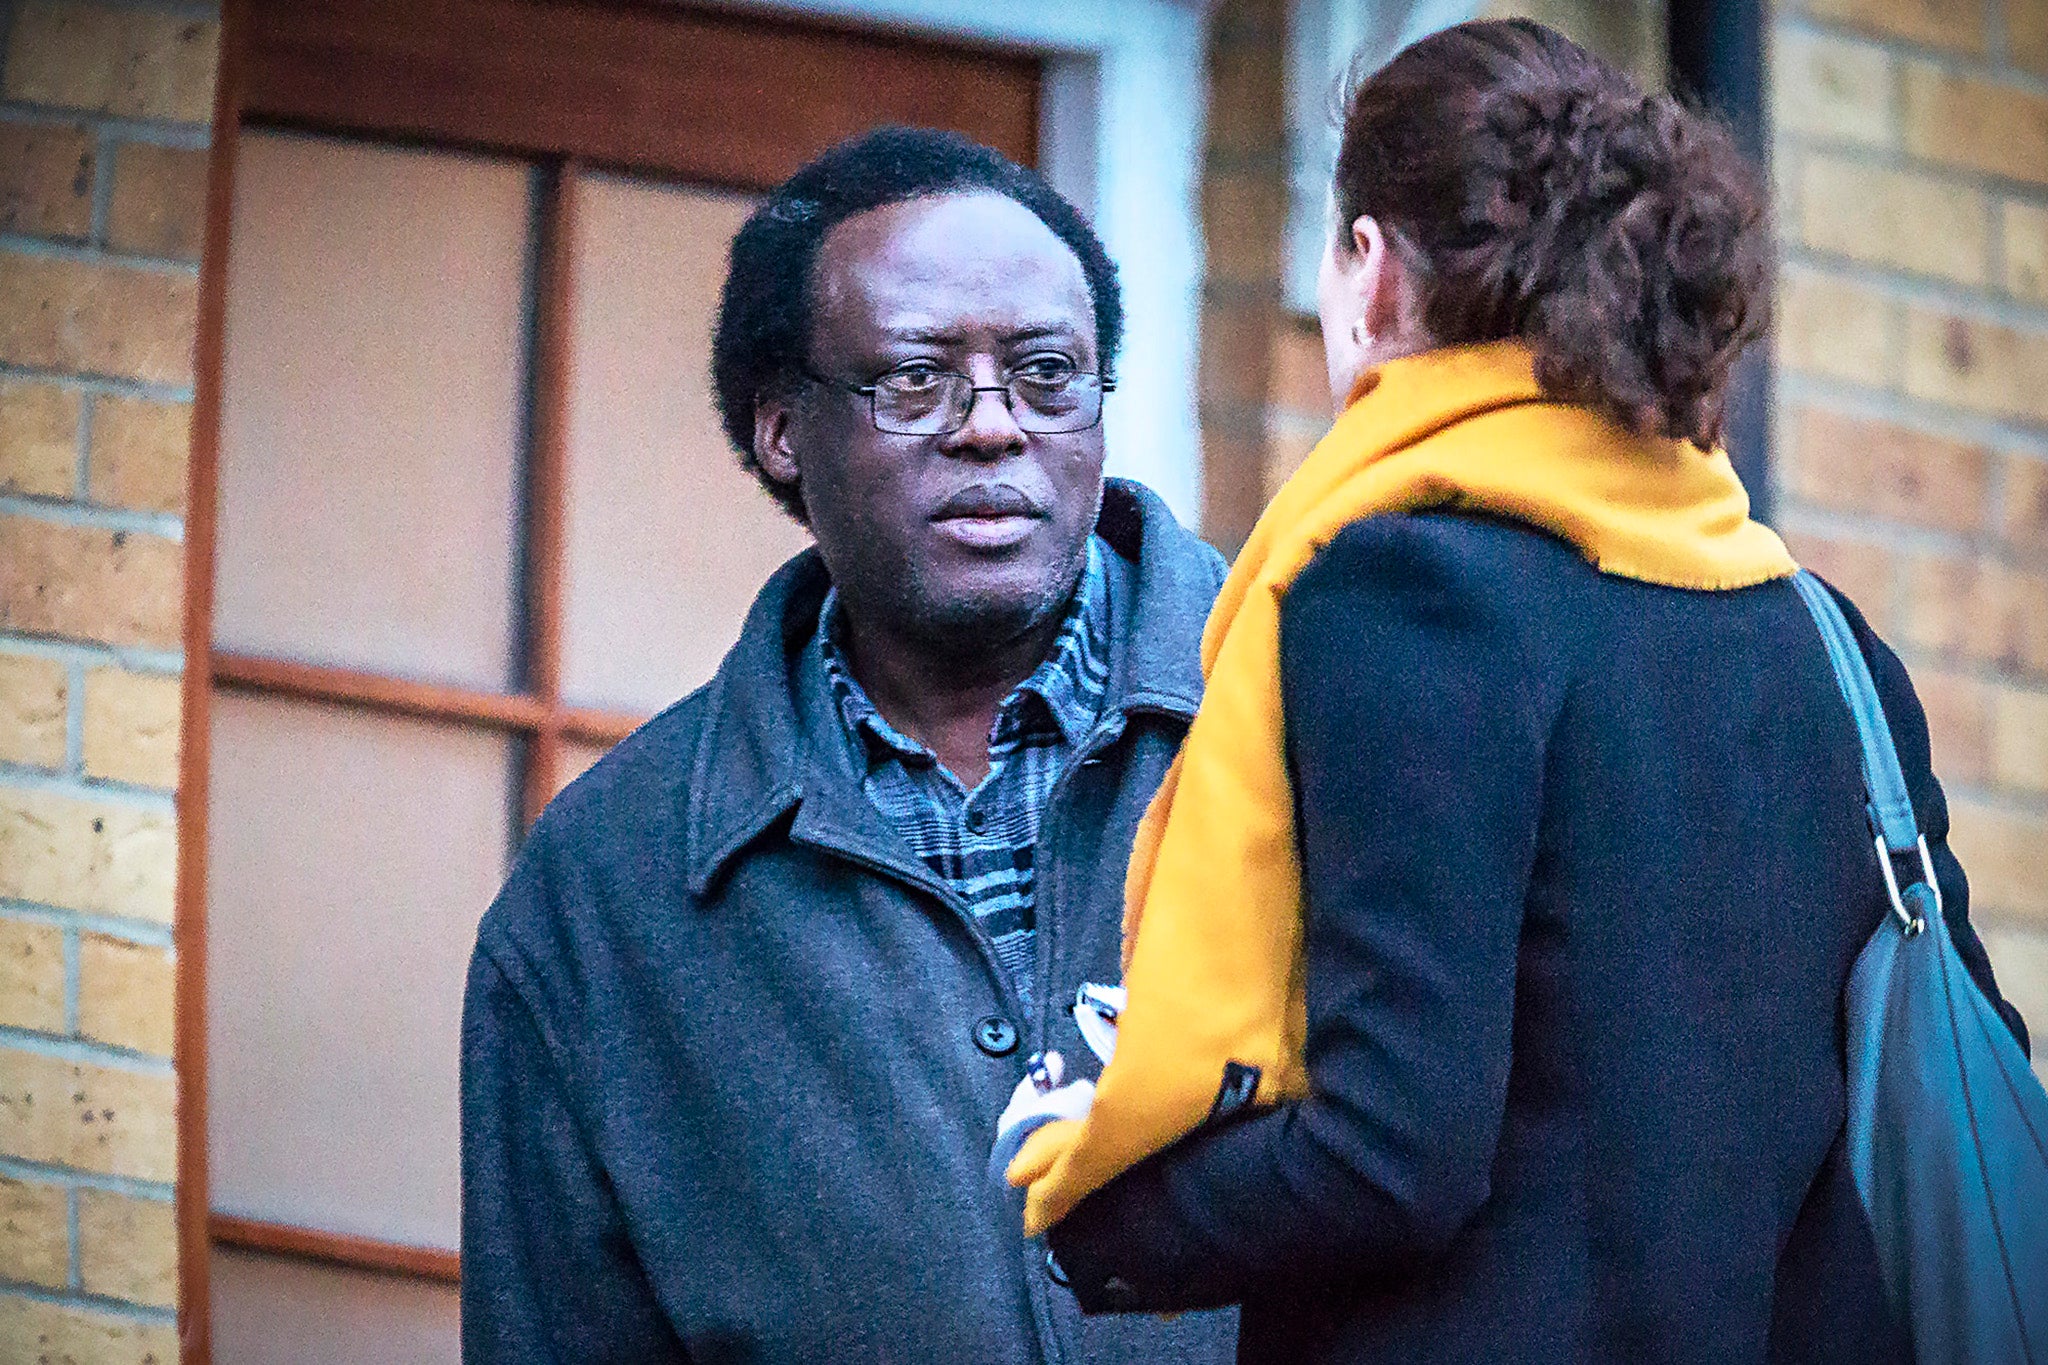 Reporter Amy-Clare Martin approaches suspect Celestin Mutabaruka in 2019